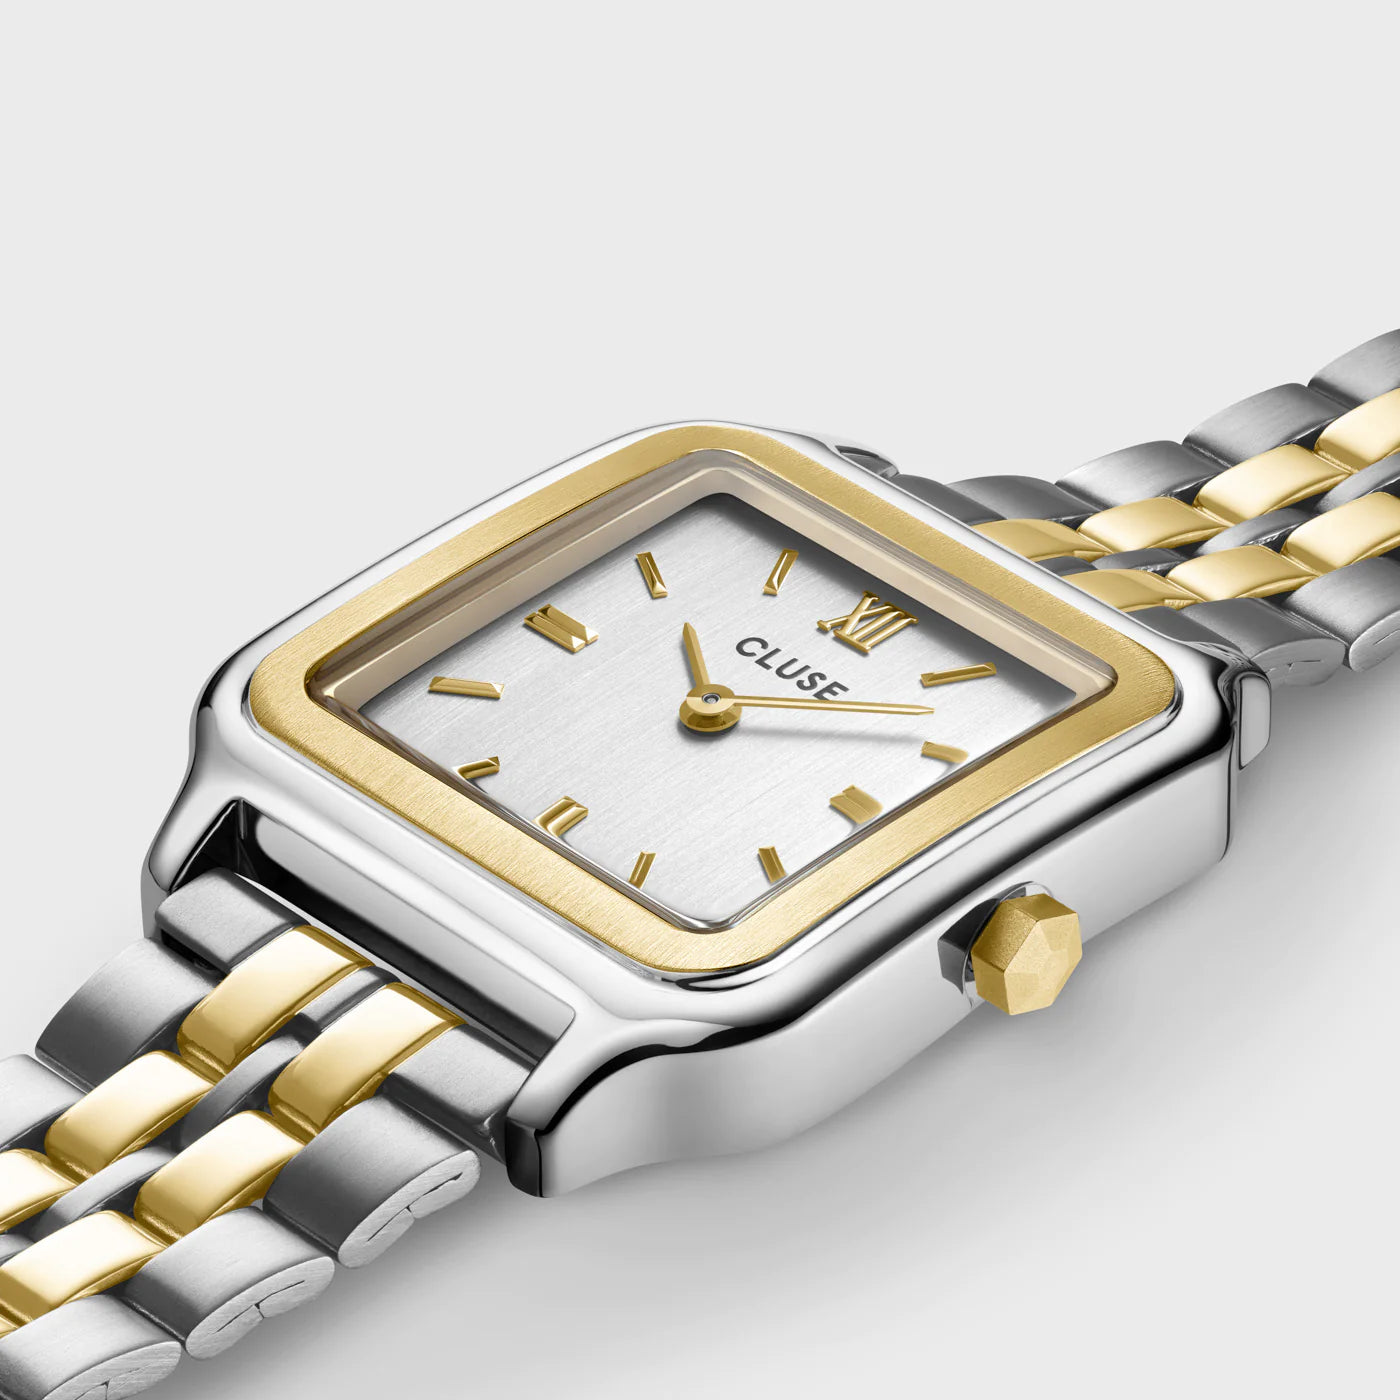 Detailansicht der Cluse Stahl-Uhr "Gracieuse" in Stahl-Gold-Optik (bicolor) mit weißem Zifferblatt